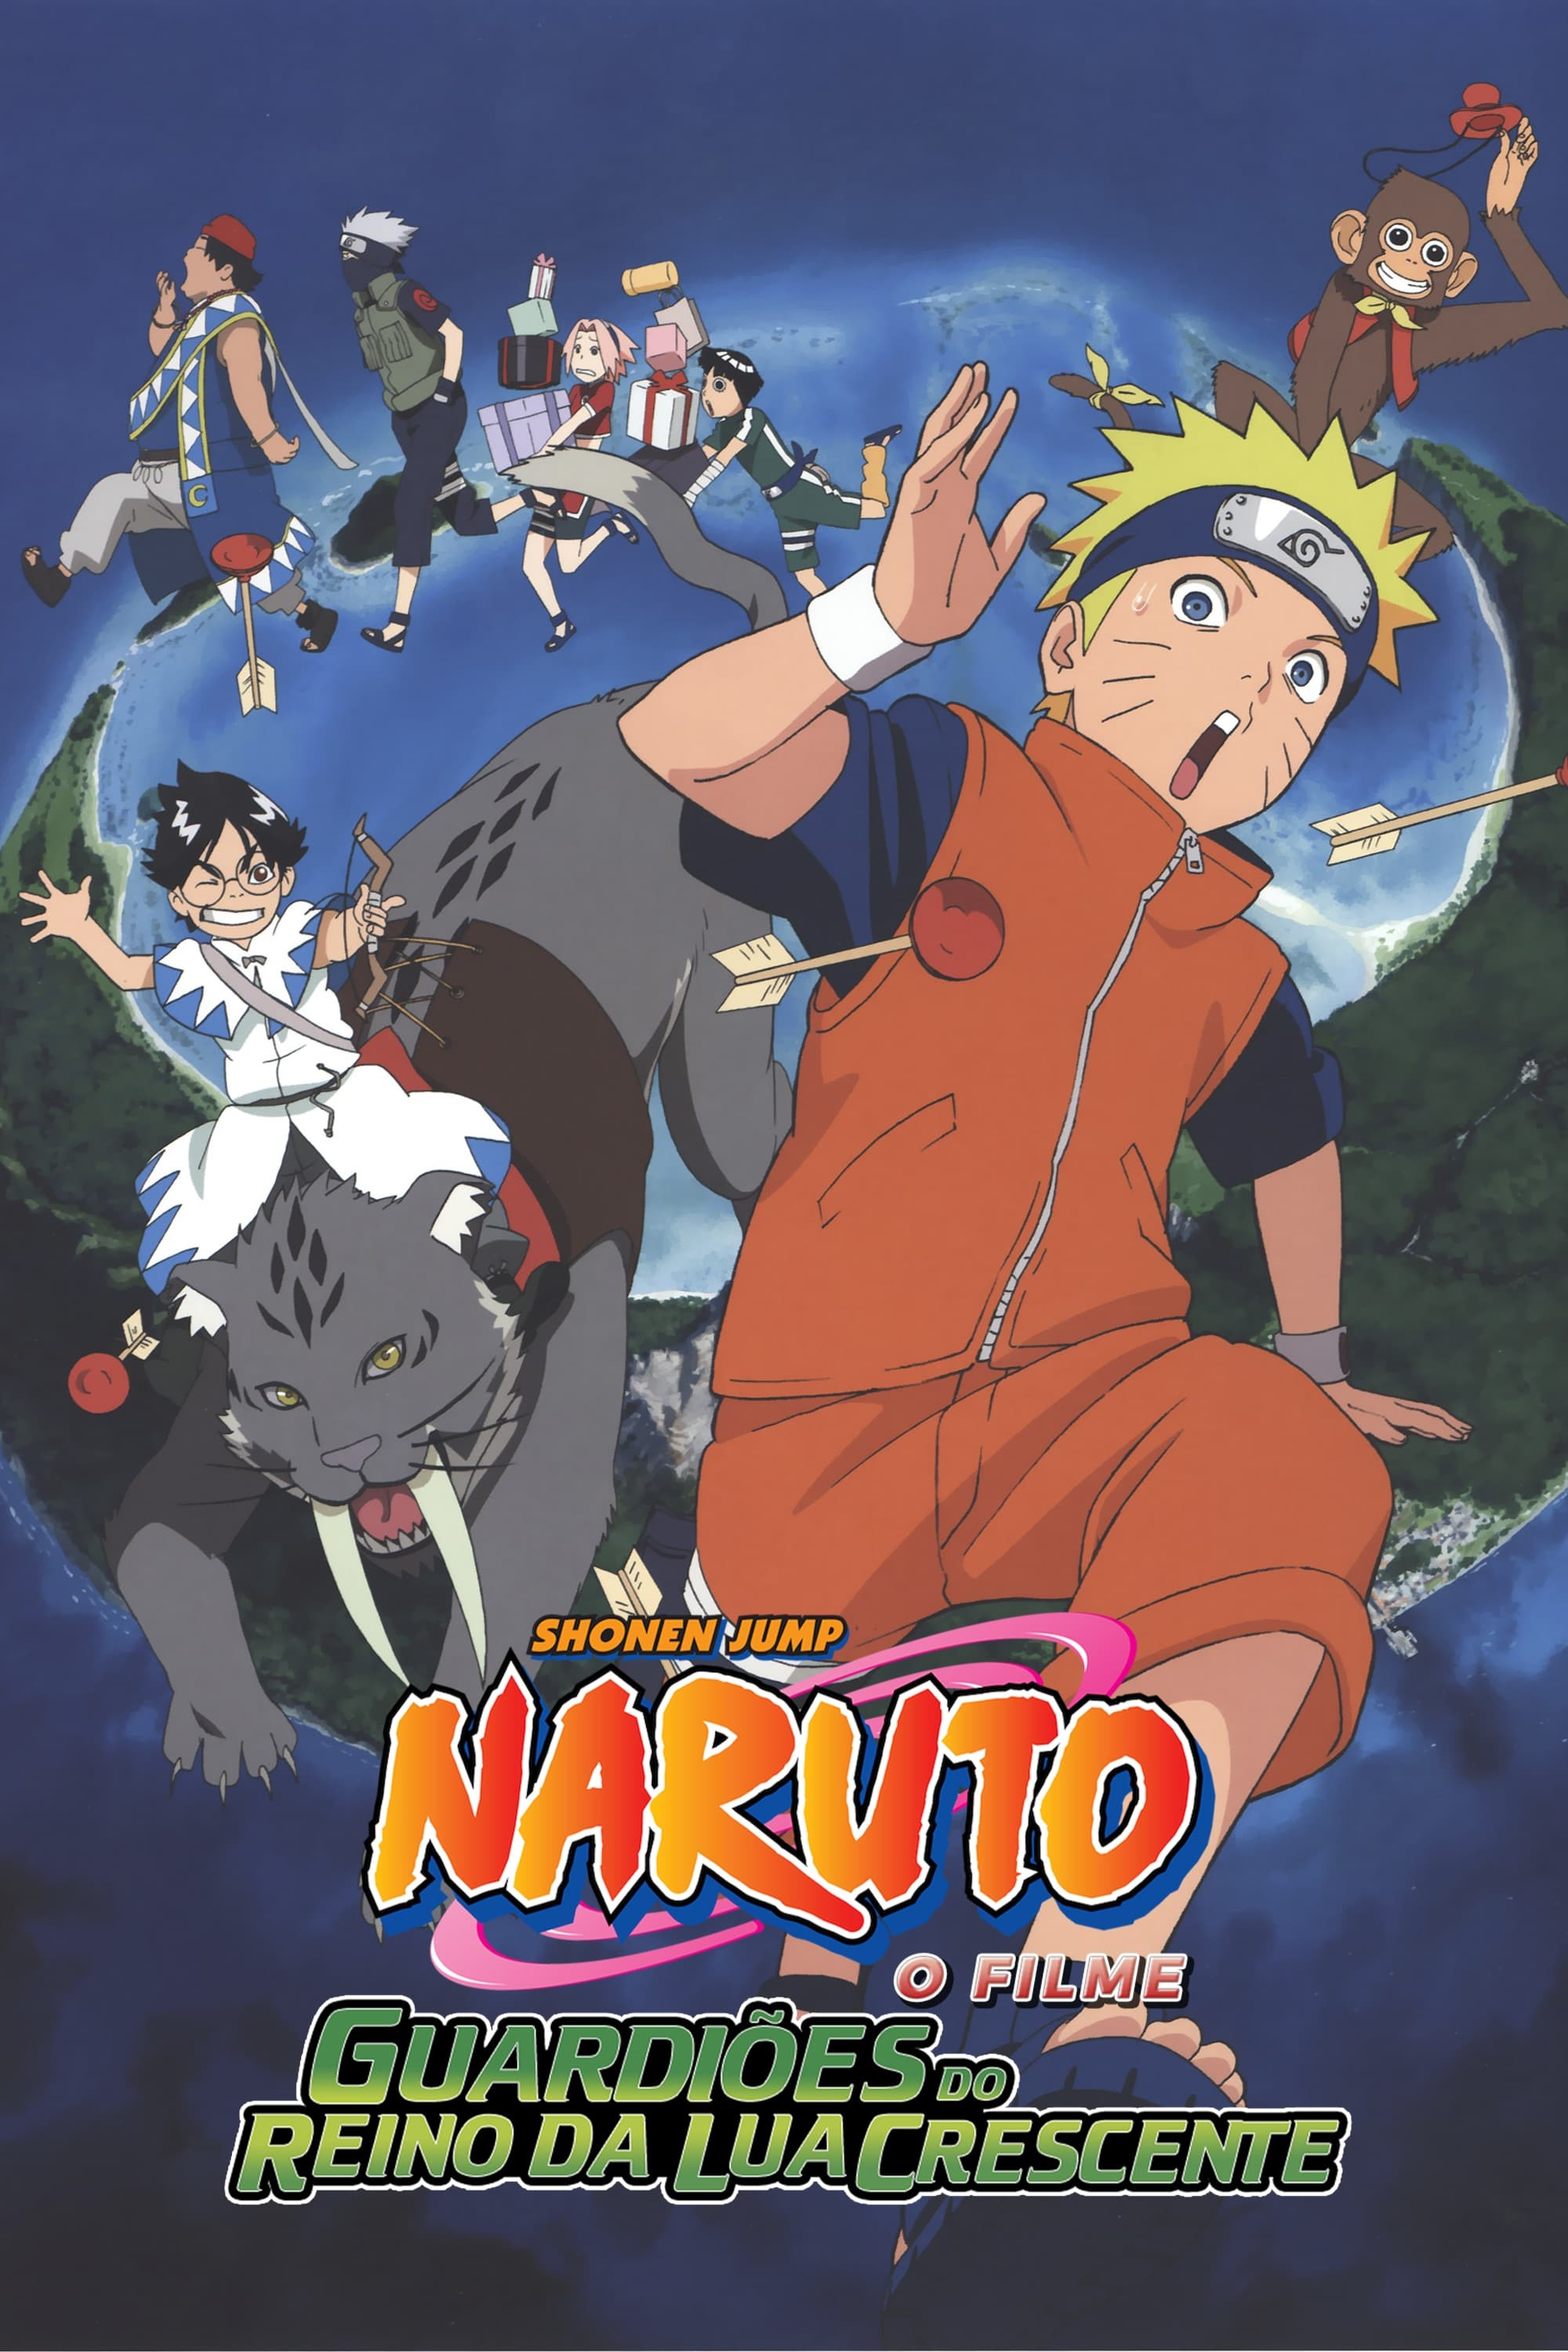 The Last: Naruto O Filme - Poster, Circuito de exibição e Dubladores